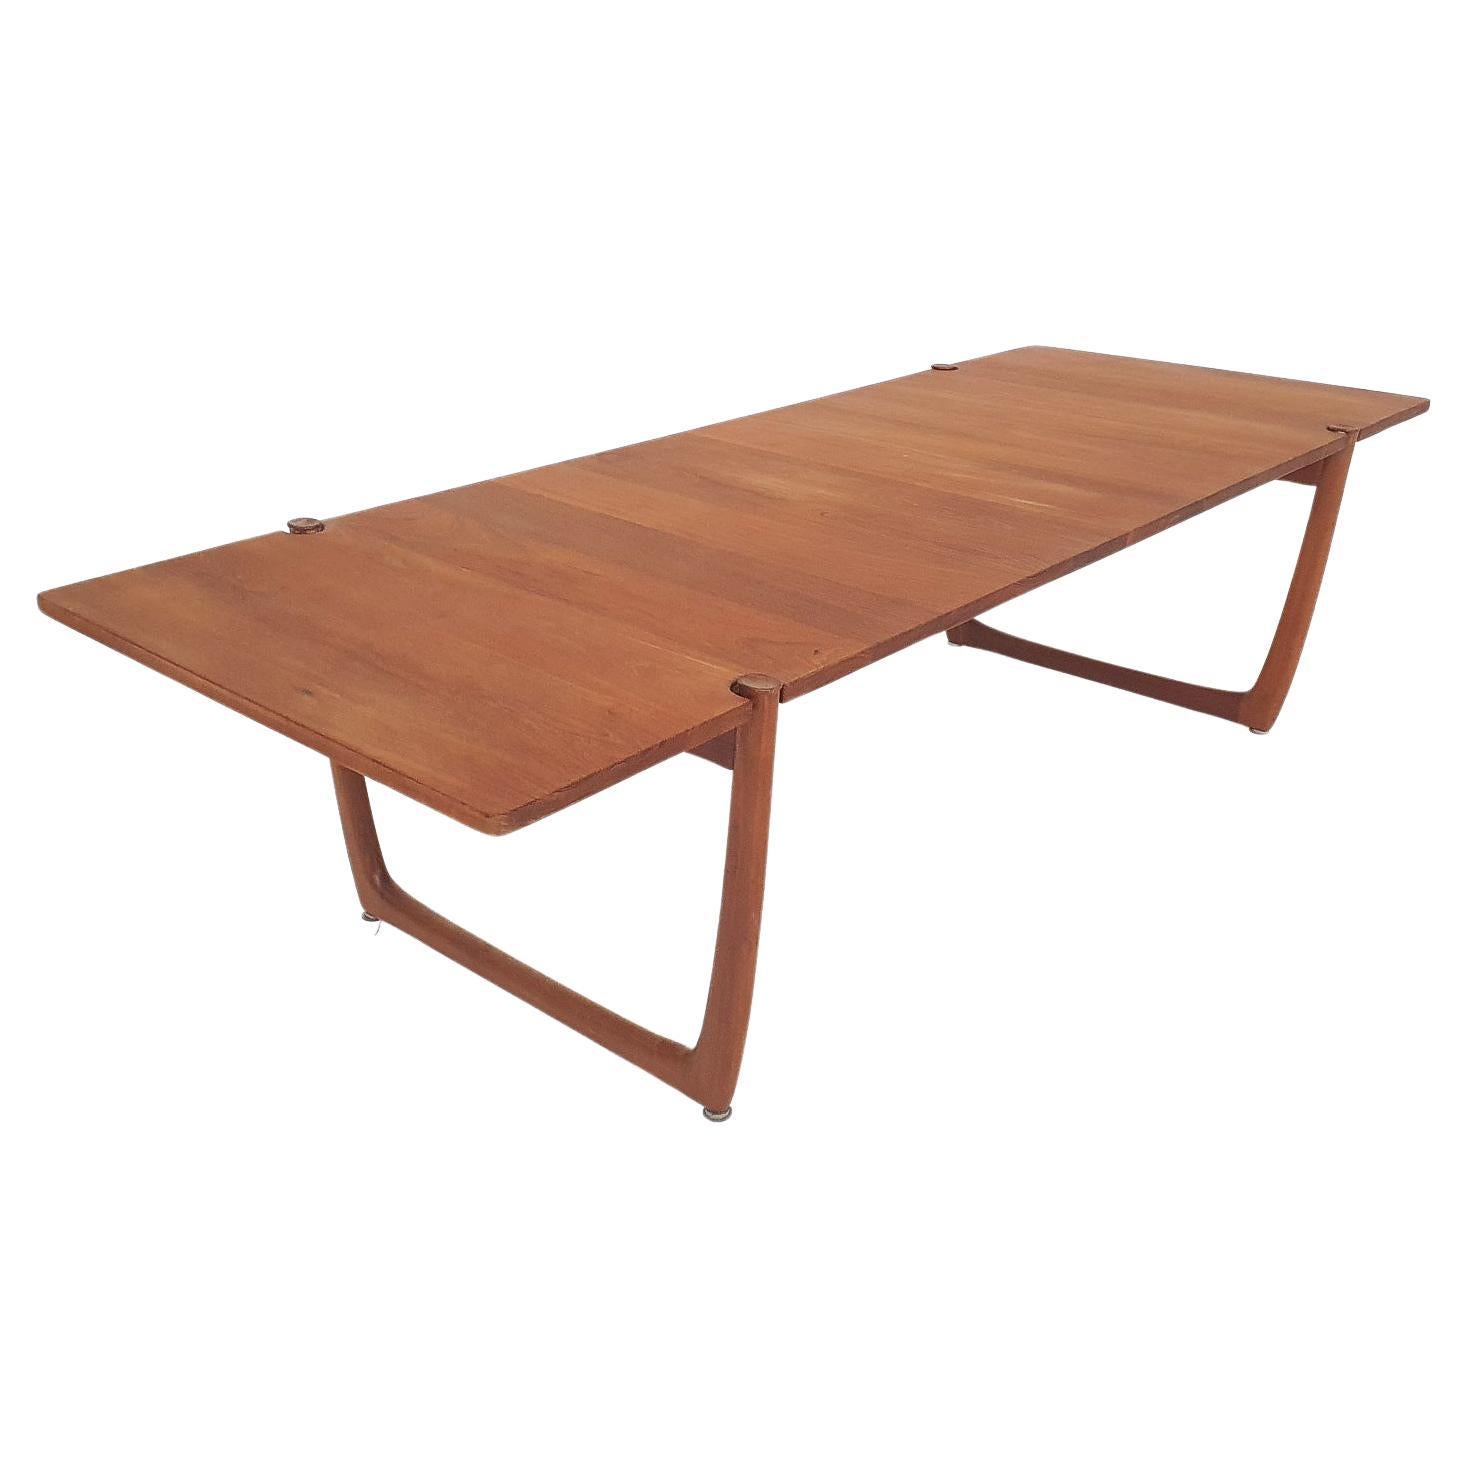 XL teak coffee table by Peter Hvidt and Orla Molgaard Nielsen model FD 575